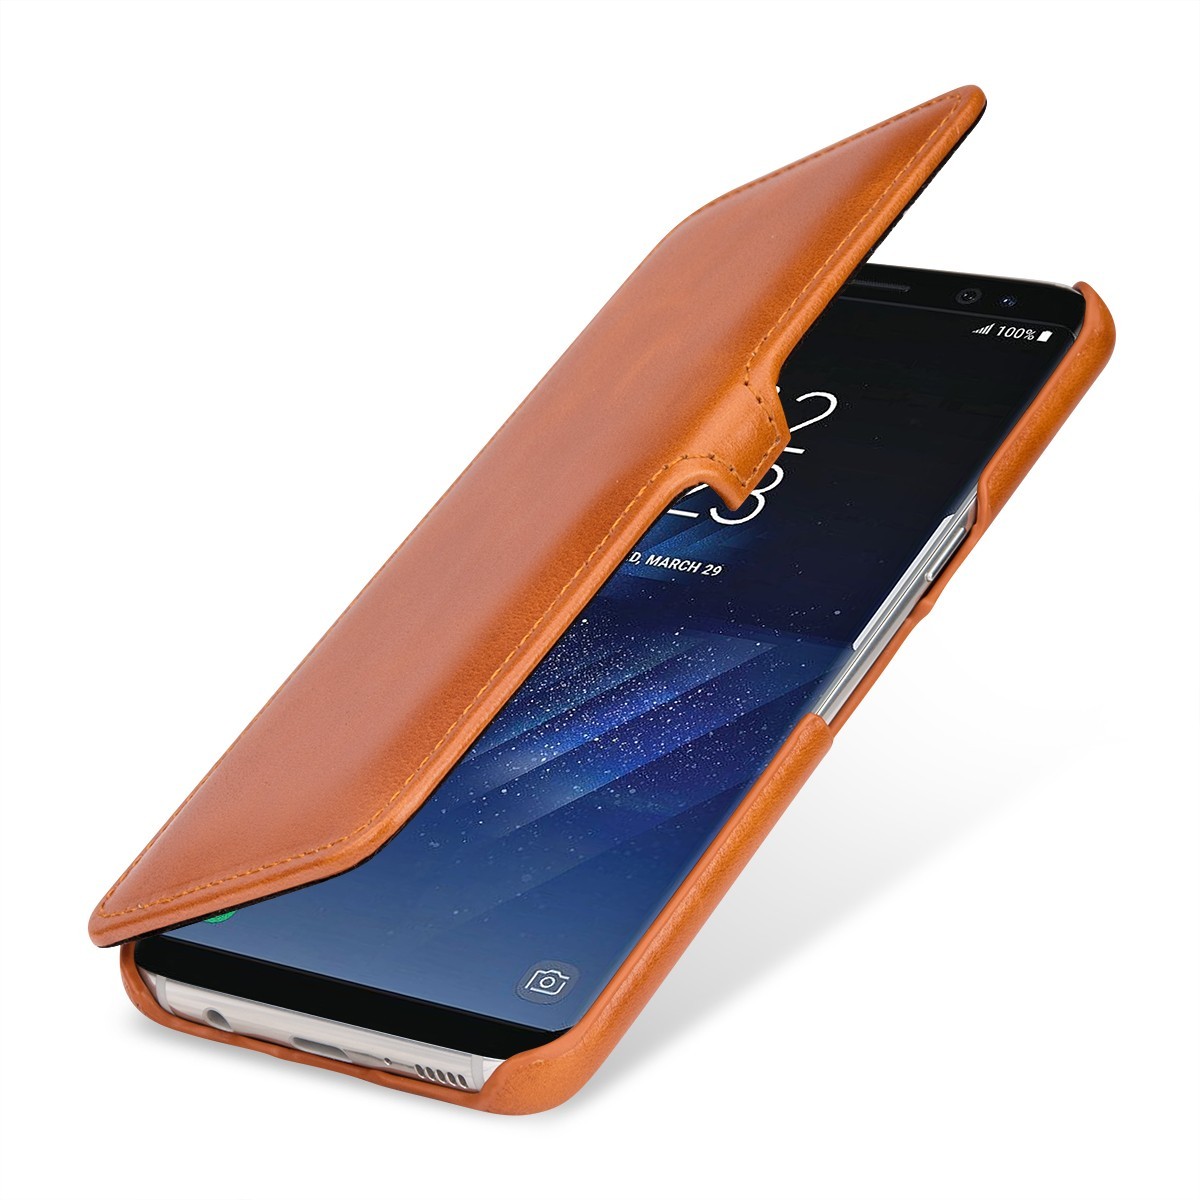 Etui Galaxy S8 Plus book type cognac en cuir véritable - Stilgut